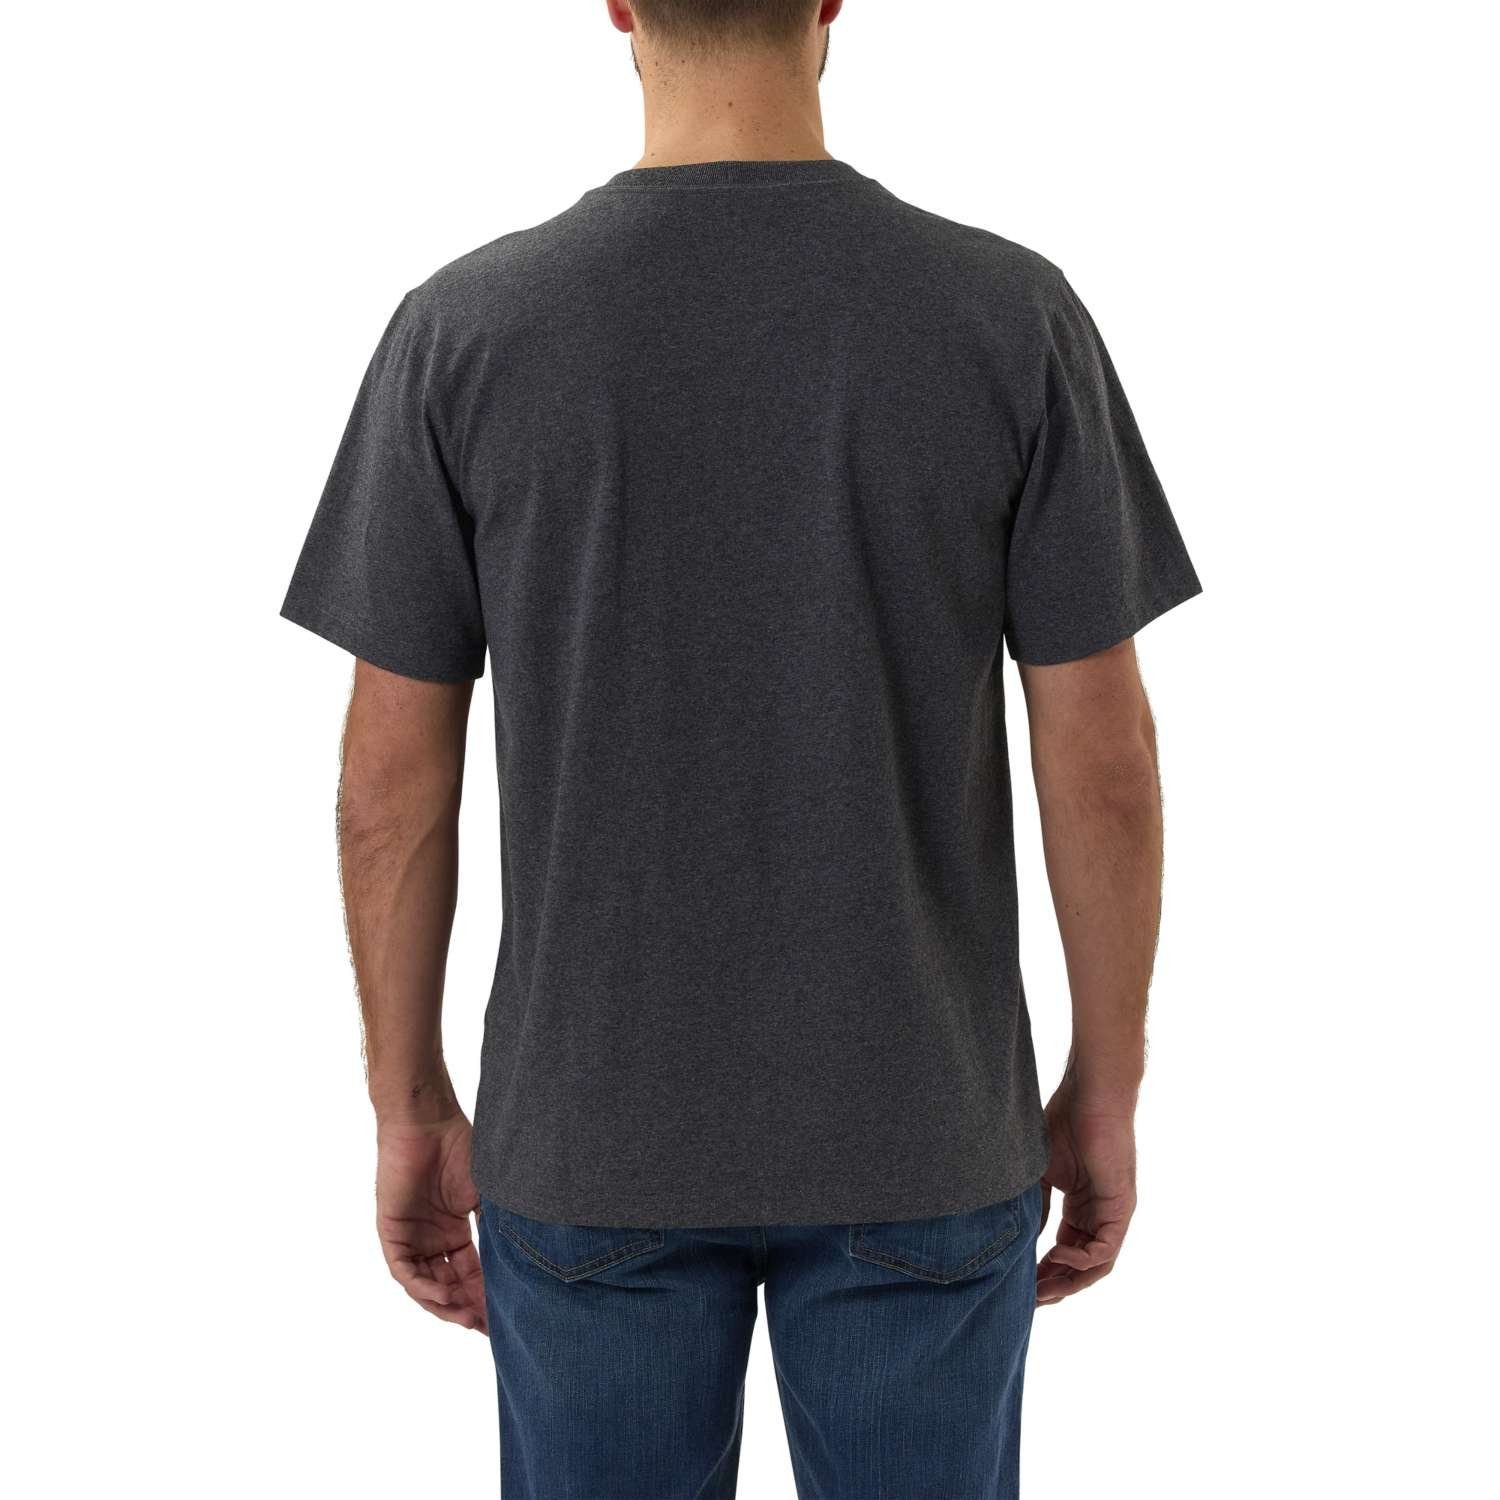 T-Shirt 103361 Carhartt LOGO auf CORE heather Brust T-SHIRT S/S der Logo (1-tlg) Carhartt carbon